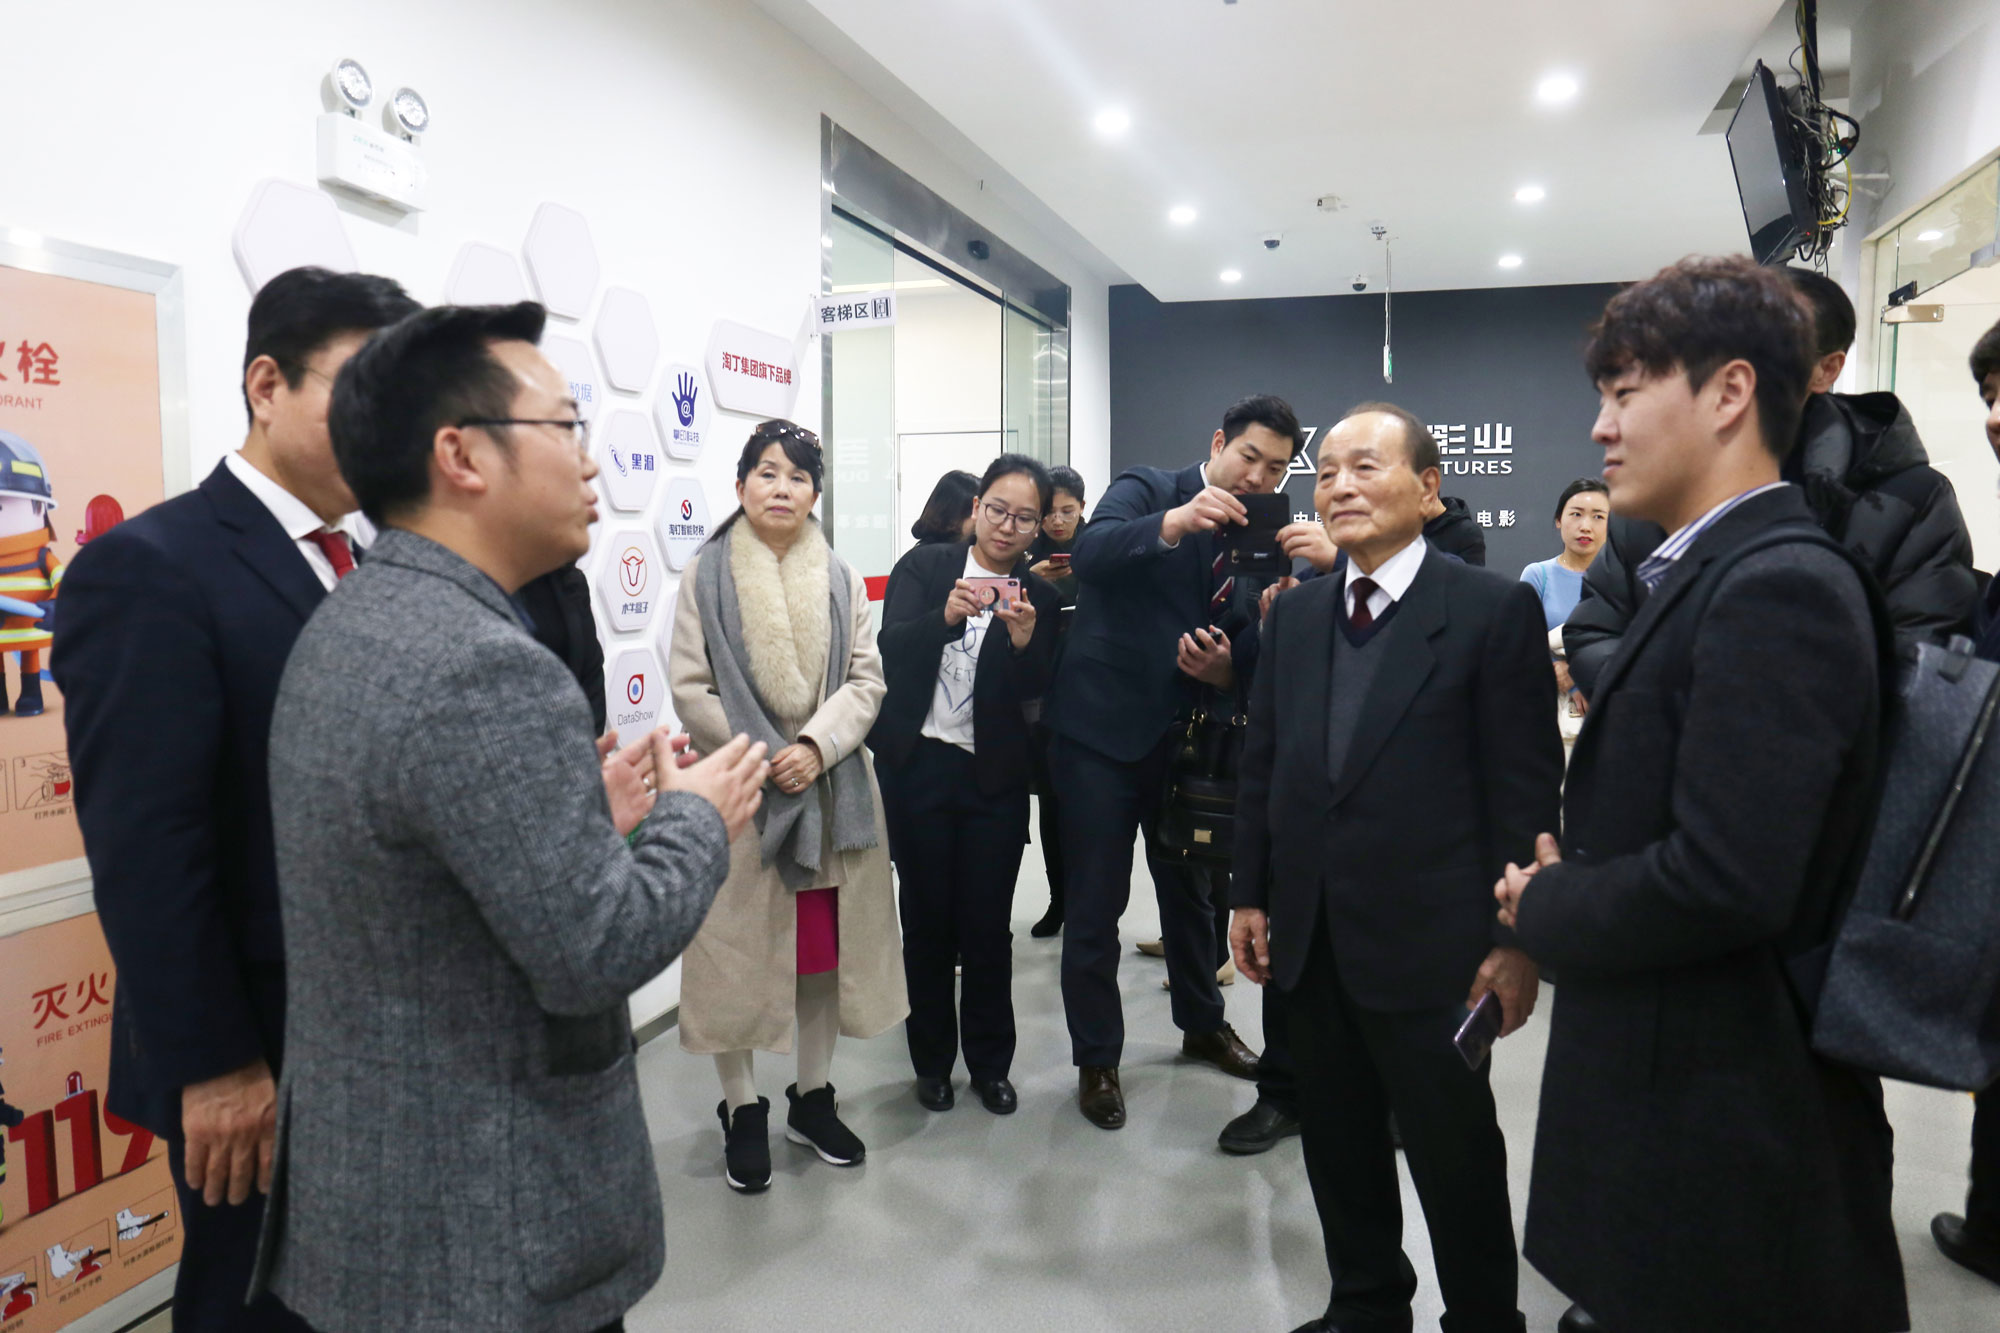 韩国前副总理吴明先生一行来访木牛盒子总部 ，木牛盒子获高度评价